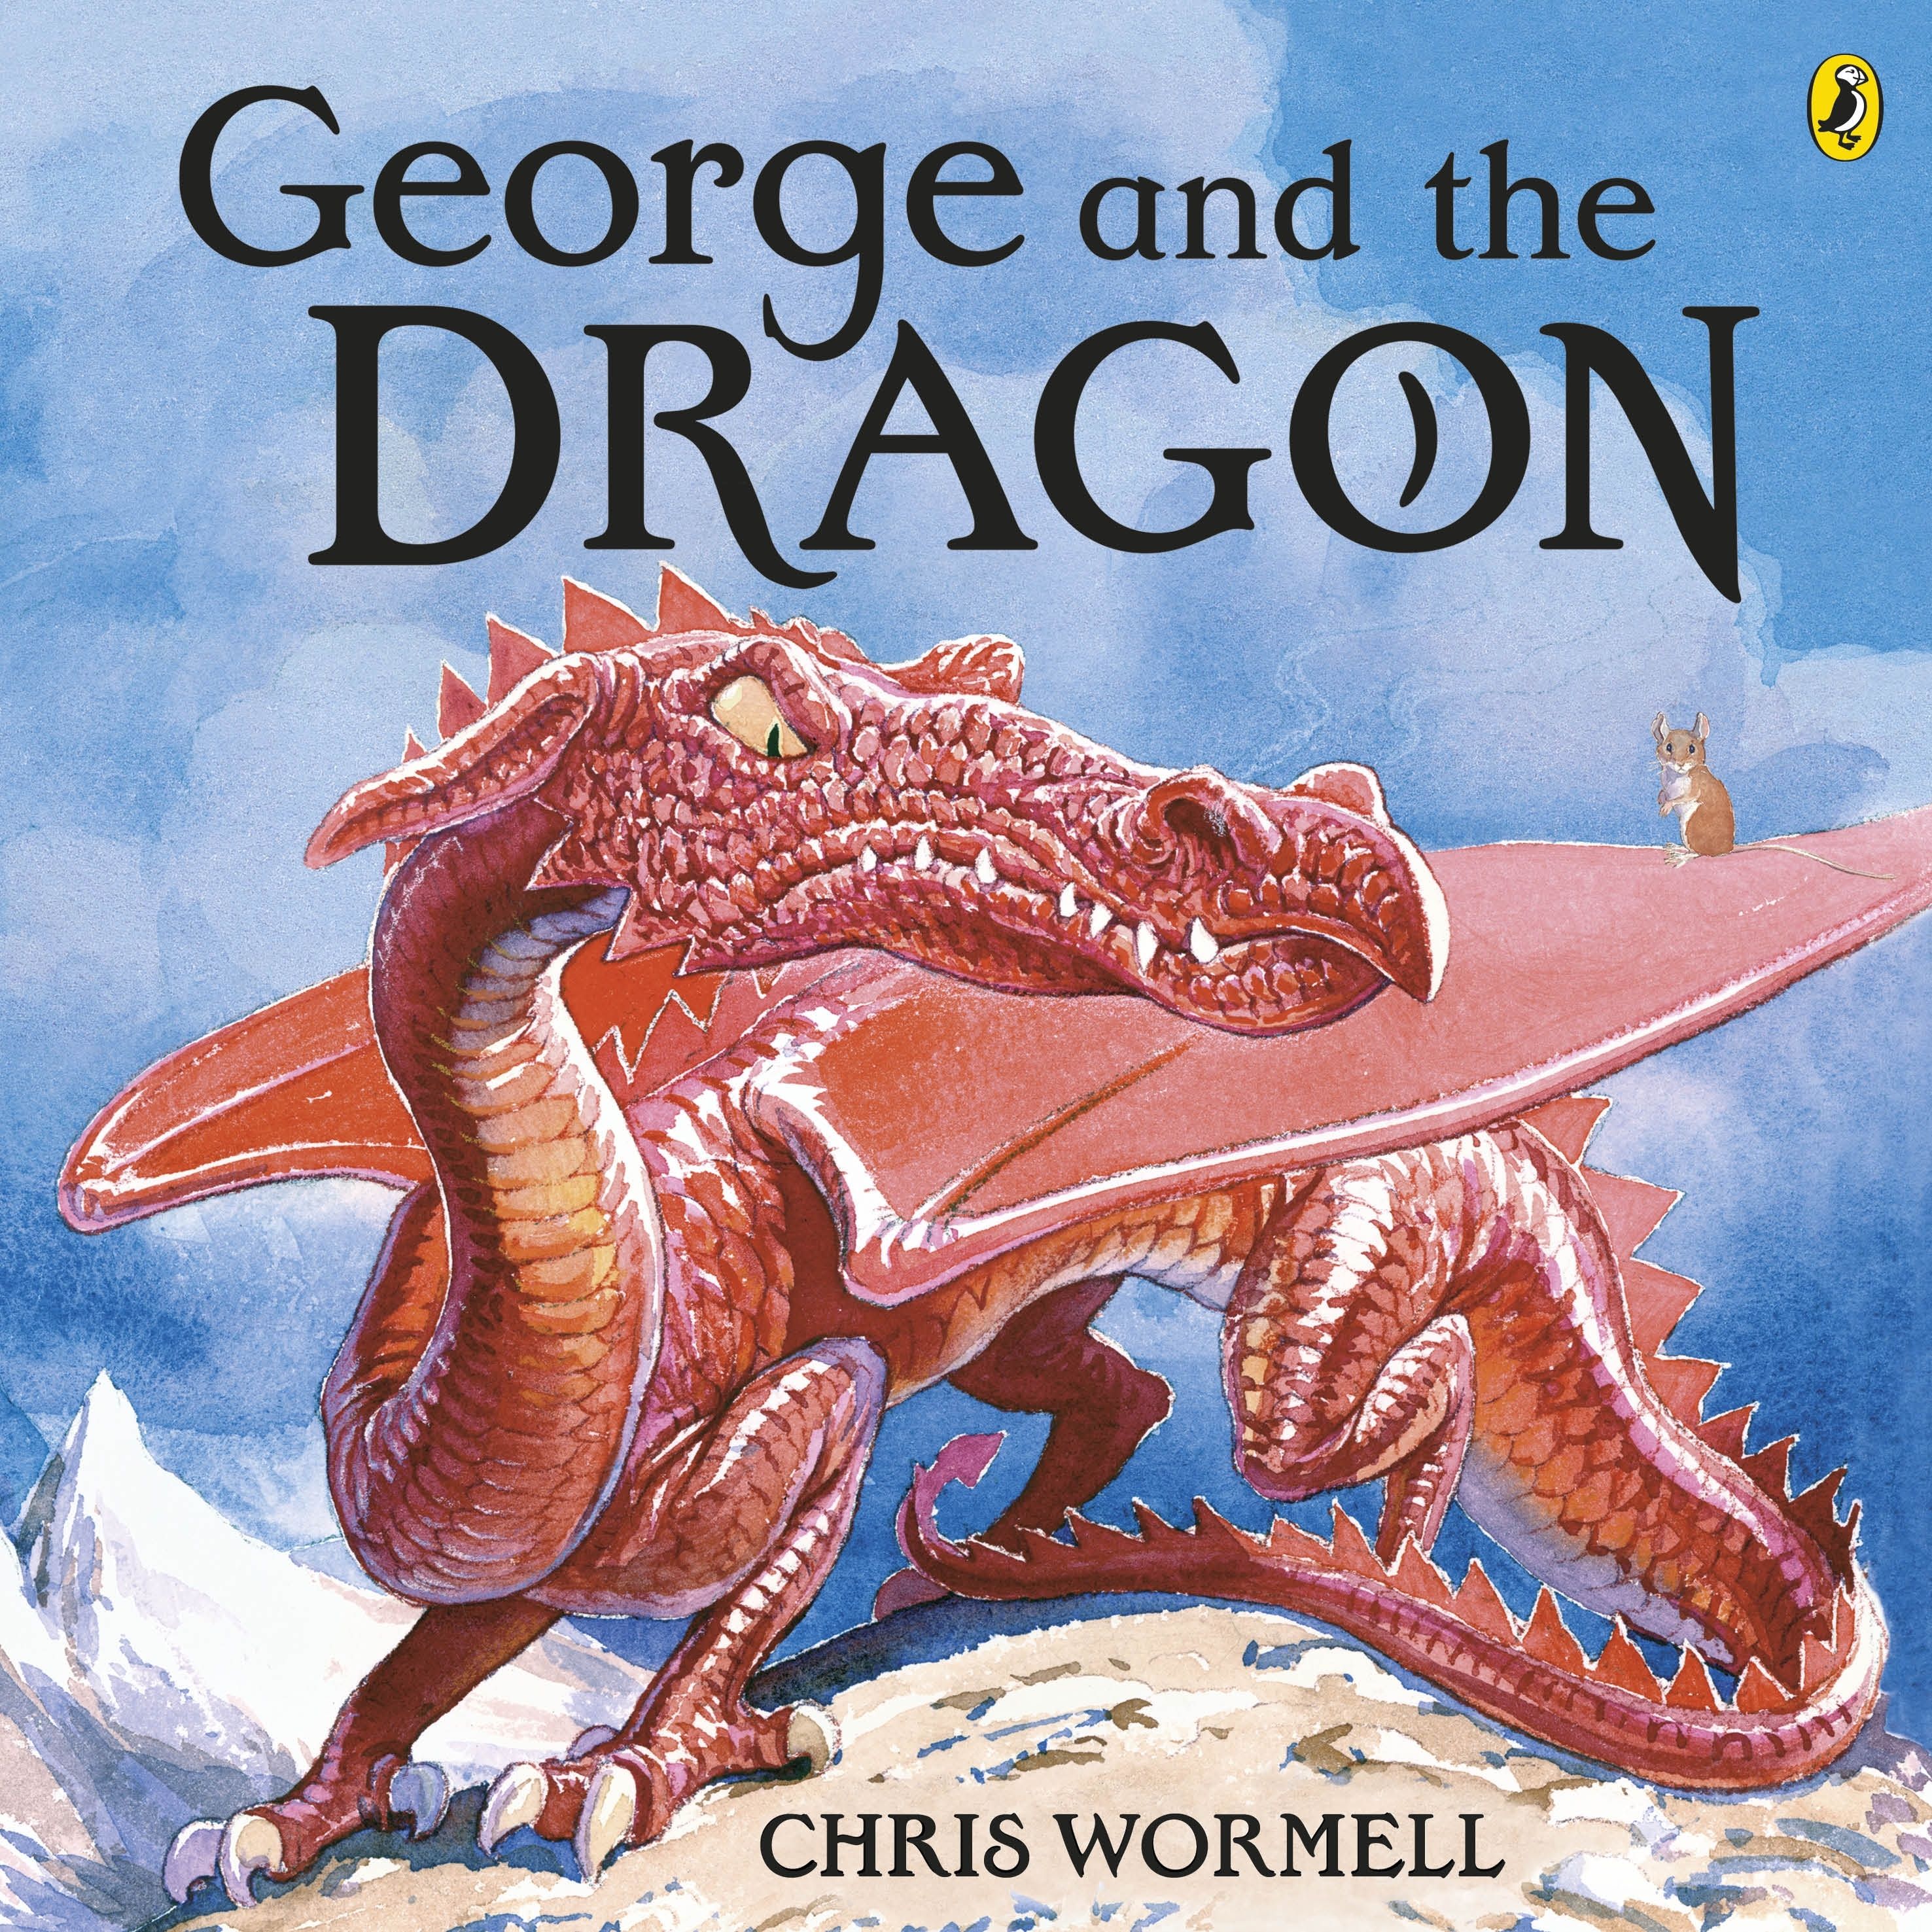 Цвет драконов книга. Дракон и Джордж. Дракон и Джордж книга. Красная книга с драконом на обложке.